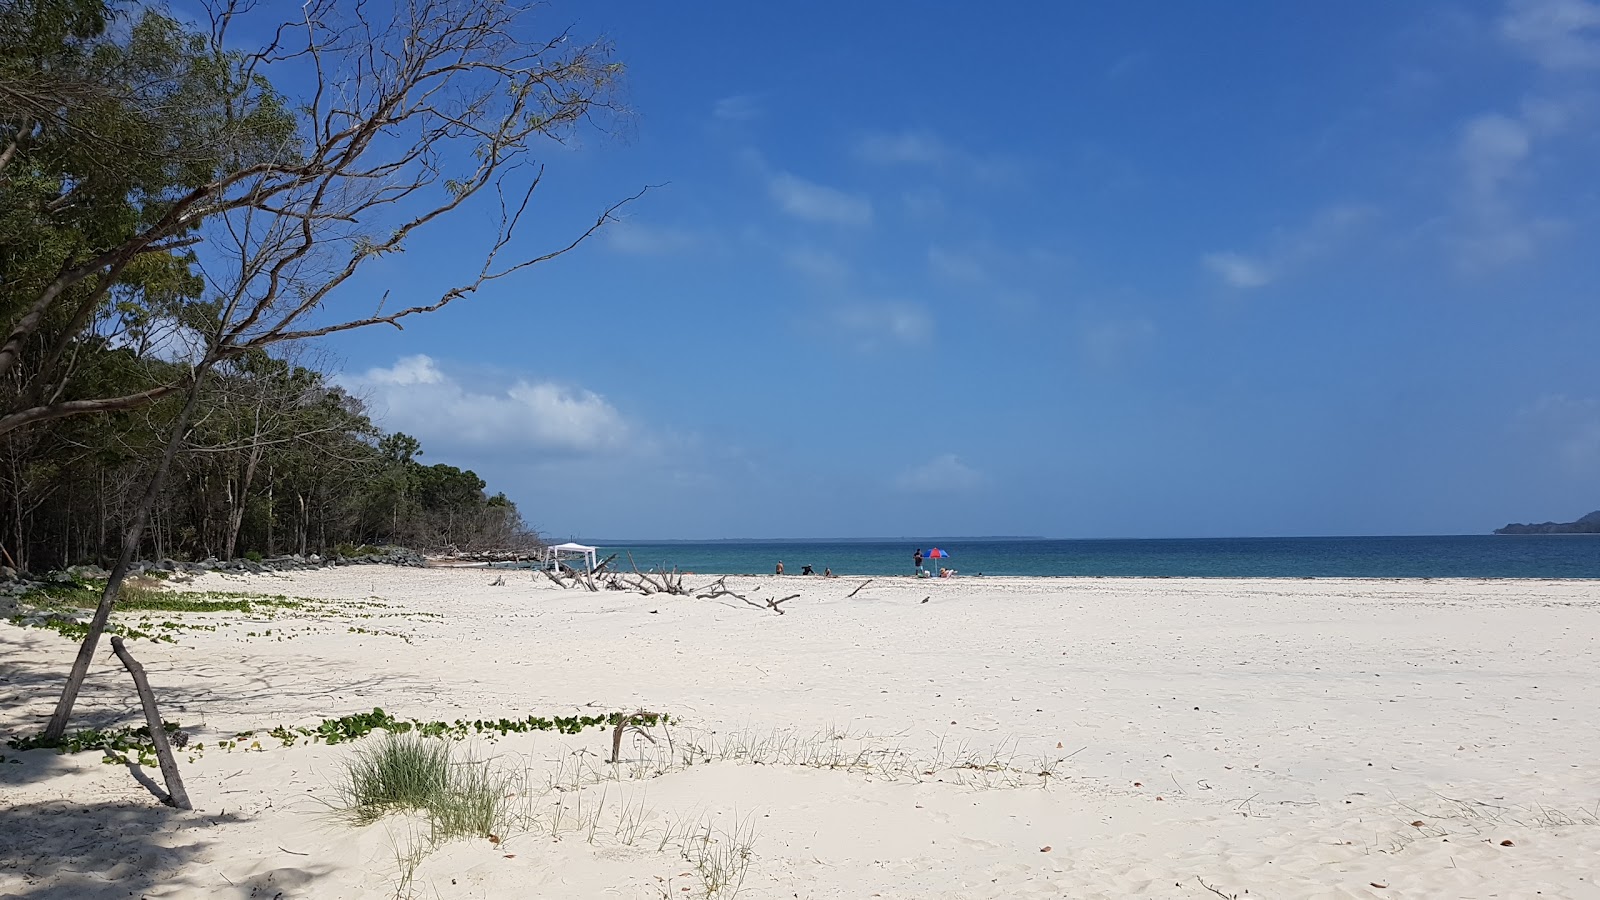 Fotografie cu Inskip Point Beach amplasat într-o zonă naturală